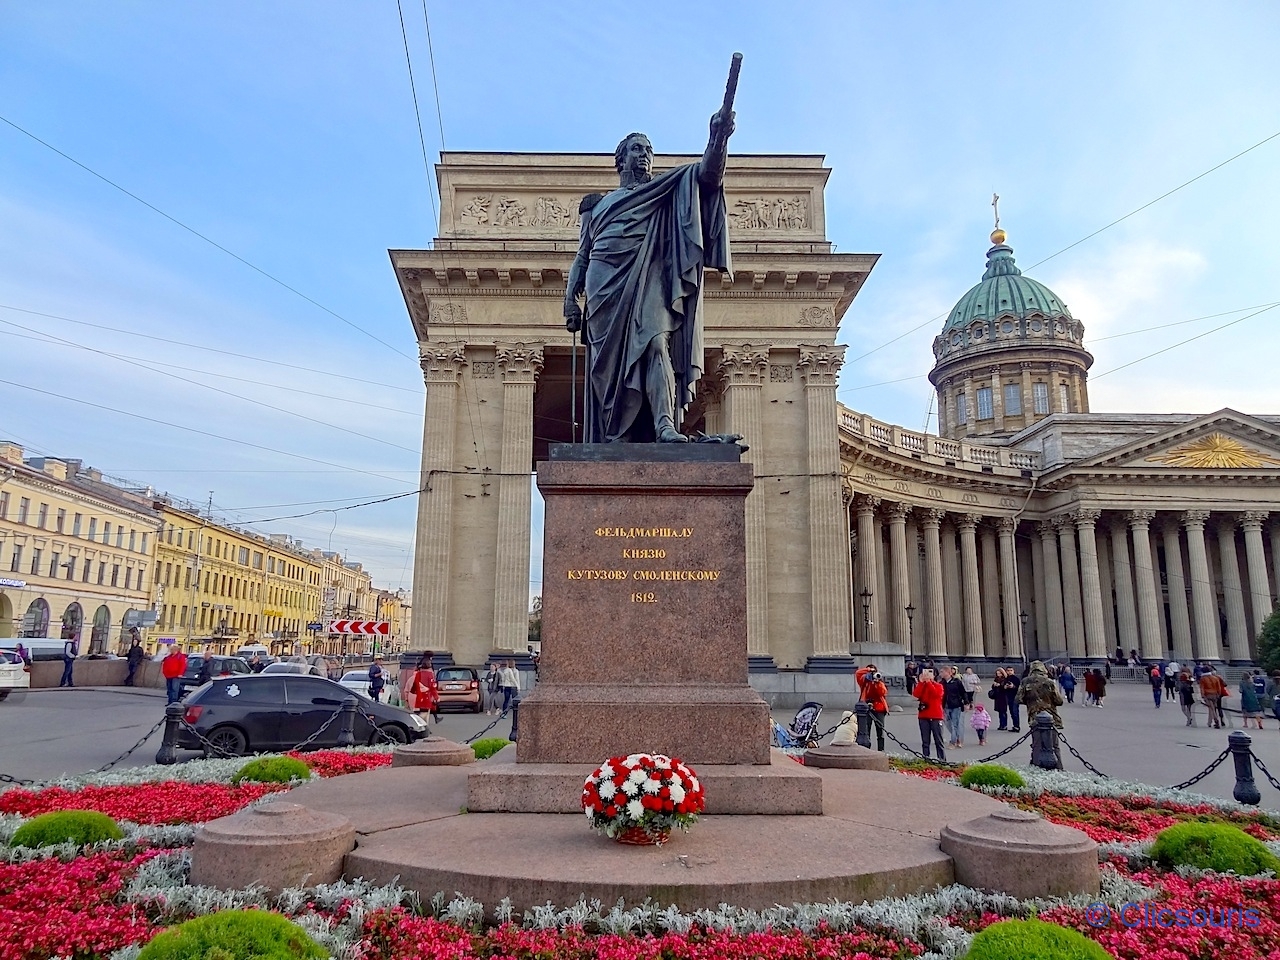 Saint-Pétersbourg Notre-Dame-de-Kazan